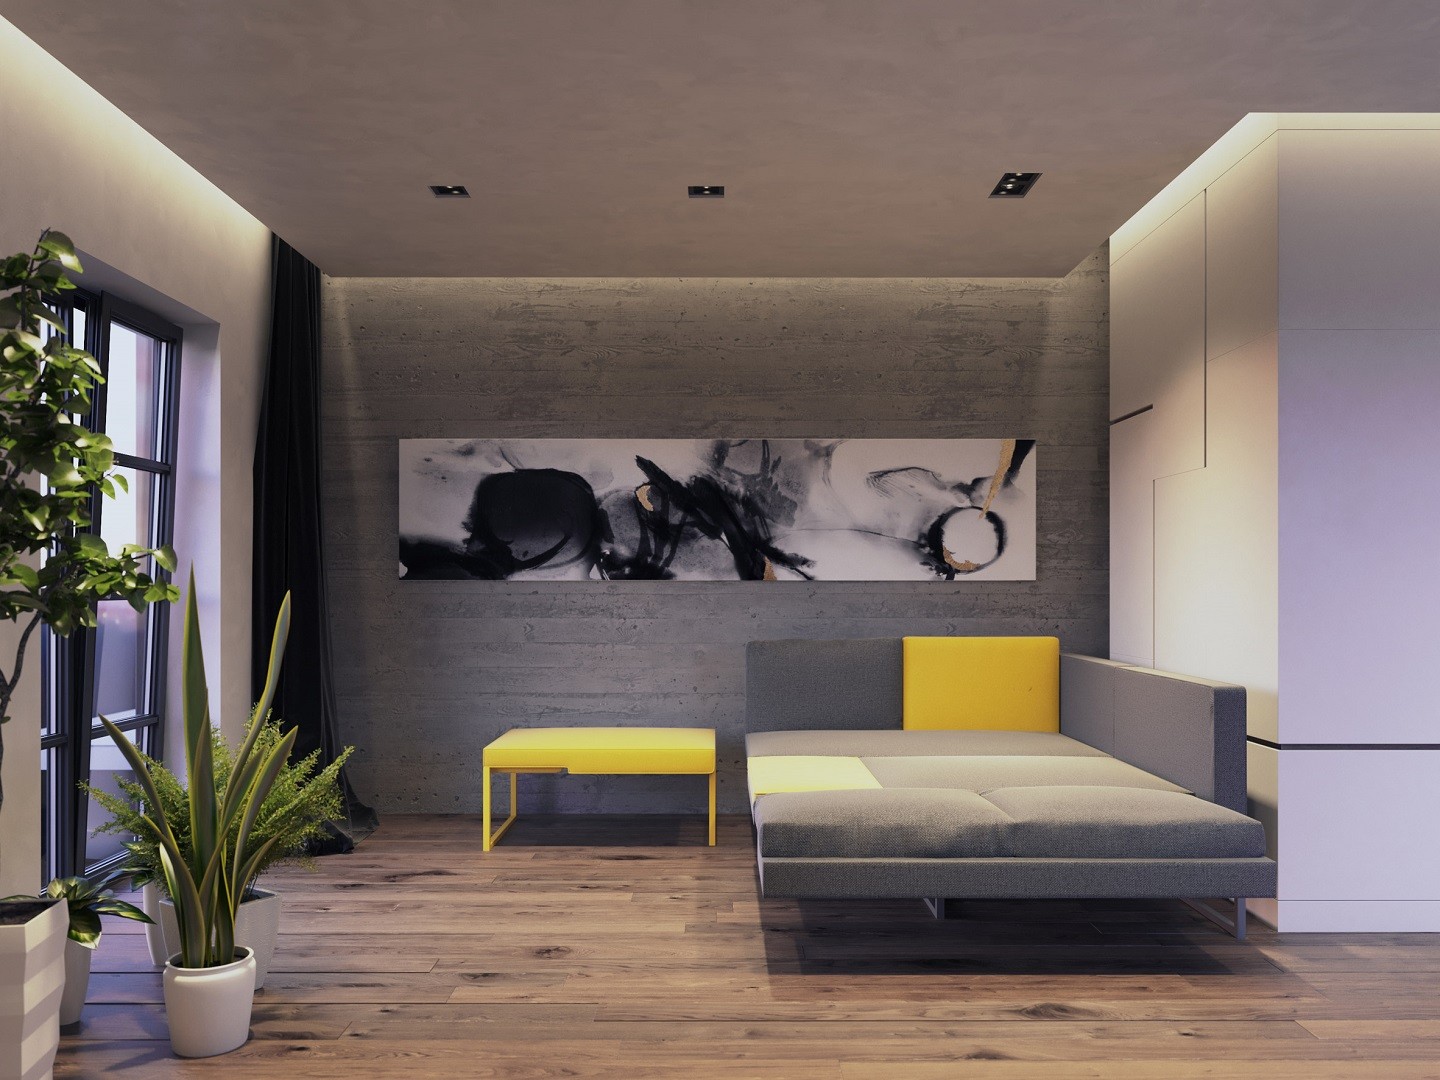 Estúdio cria sofá que se transforma em espaço de home office (Foto: Jak Studio)